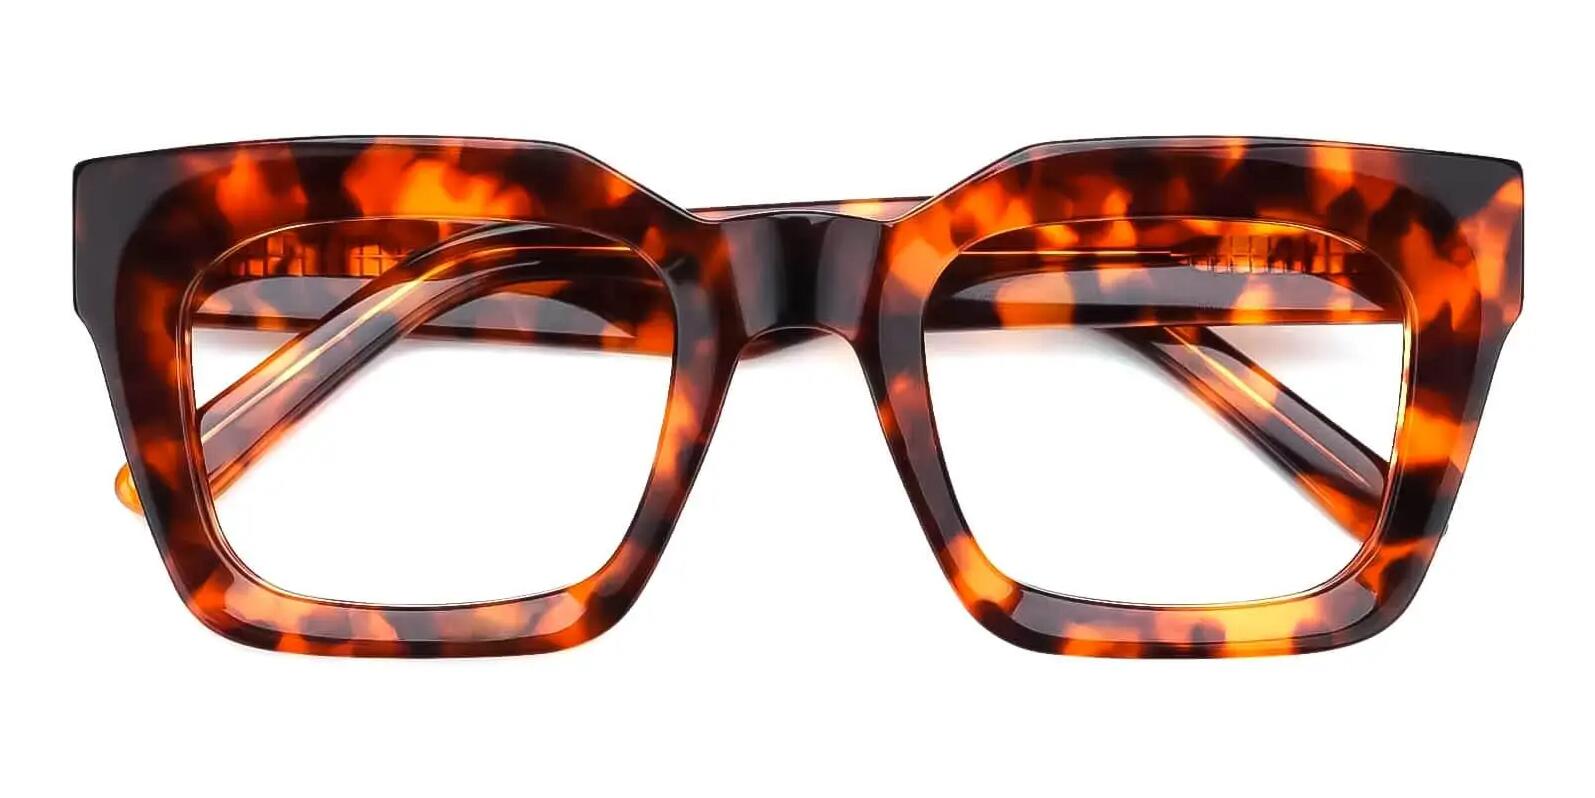 thick frame glasses